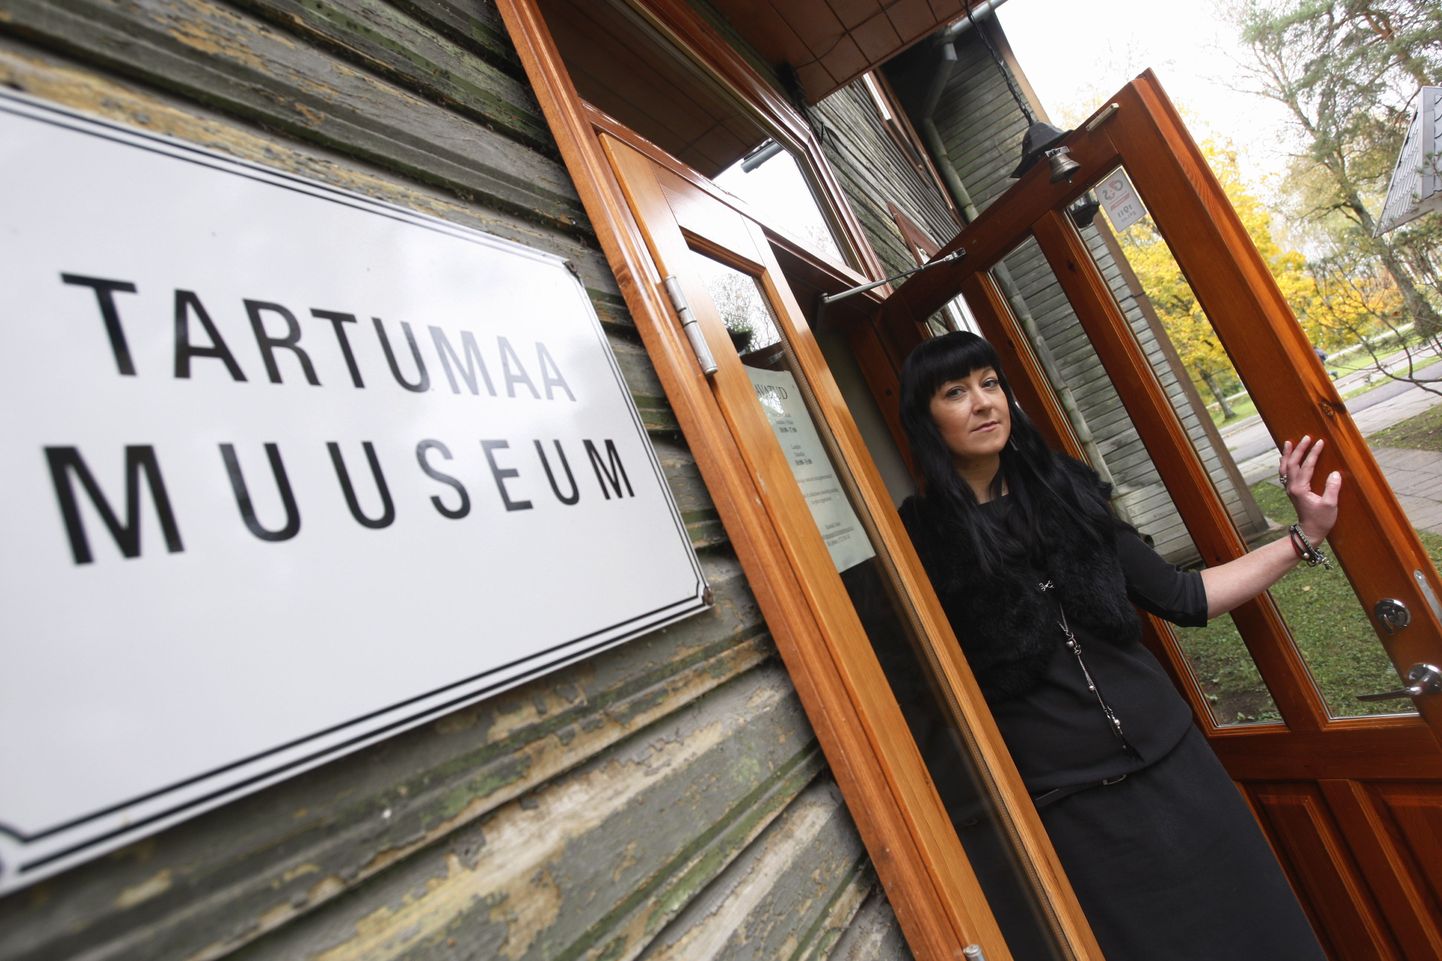 Tartumaa muuseum lõpetab 31. jaanuarist 2013 tegevuse. Pildil muuseumi direktor Kadri Kivari muuseumi uksel.